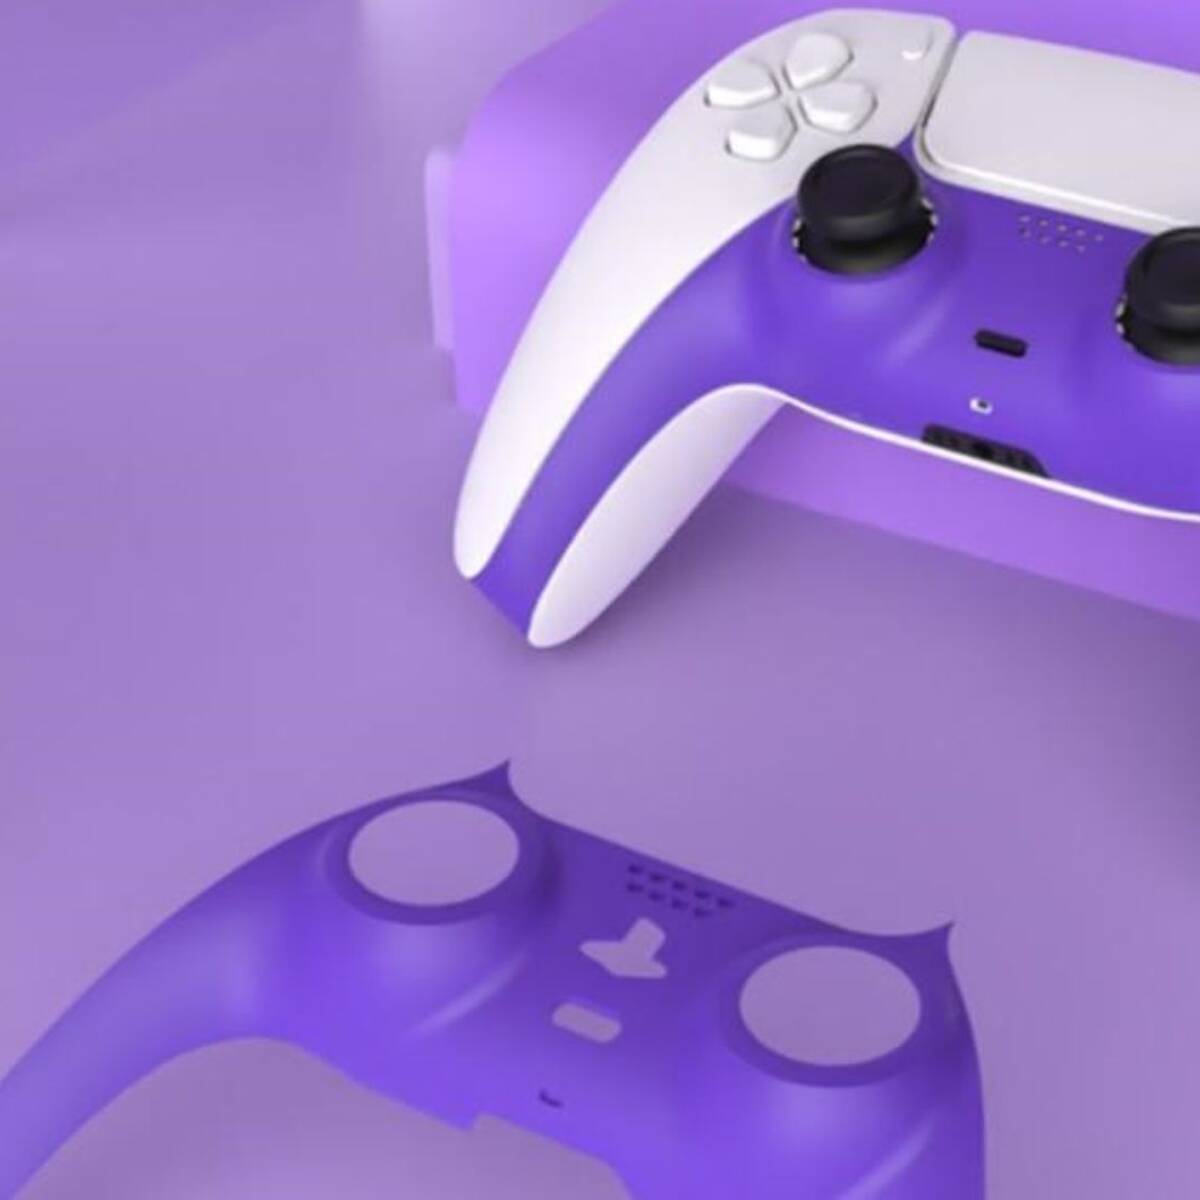 Mando Ps5 Purple - X Controllers - Mandos Personalizados